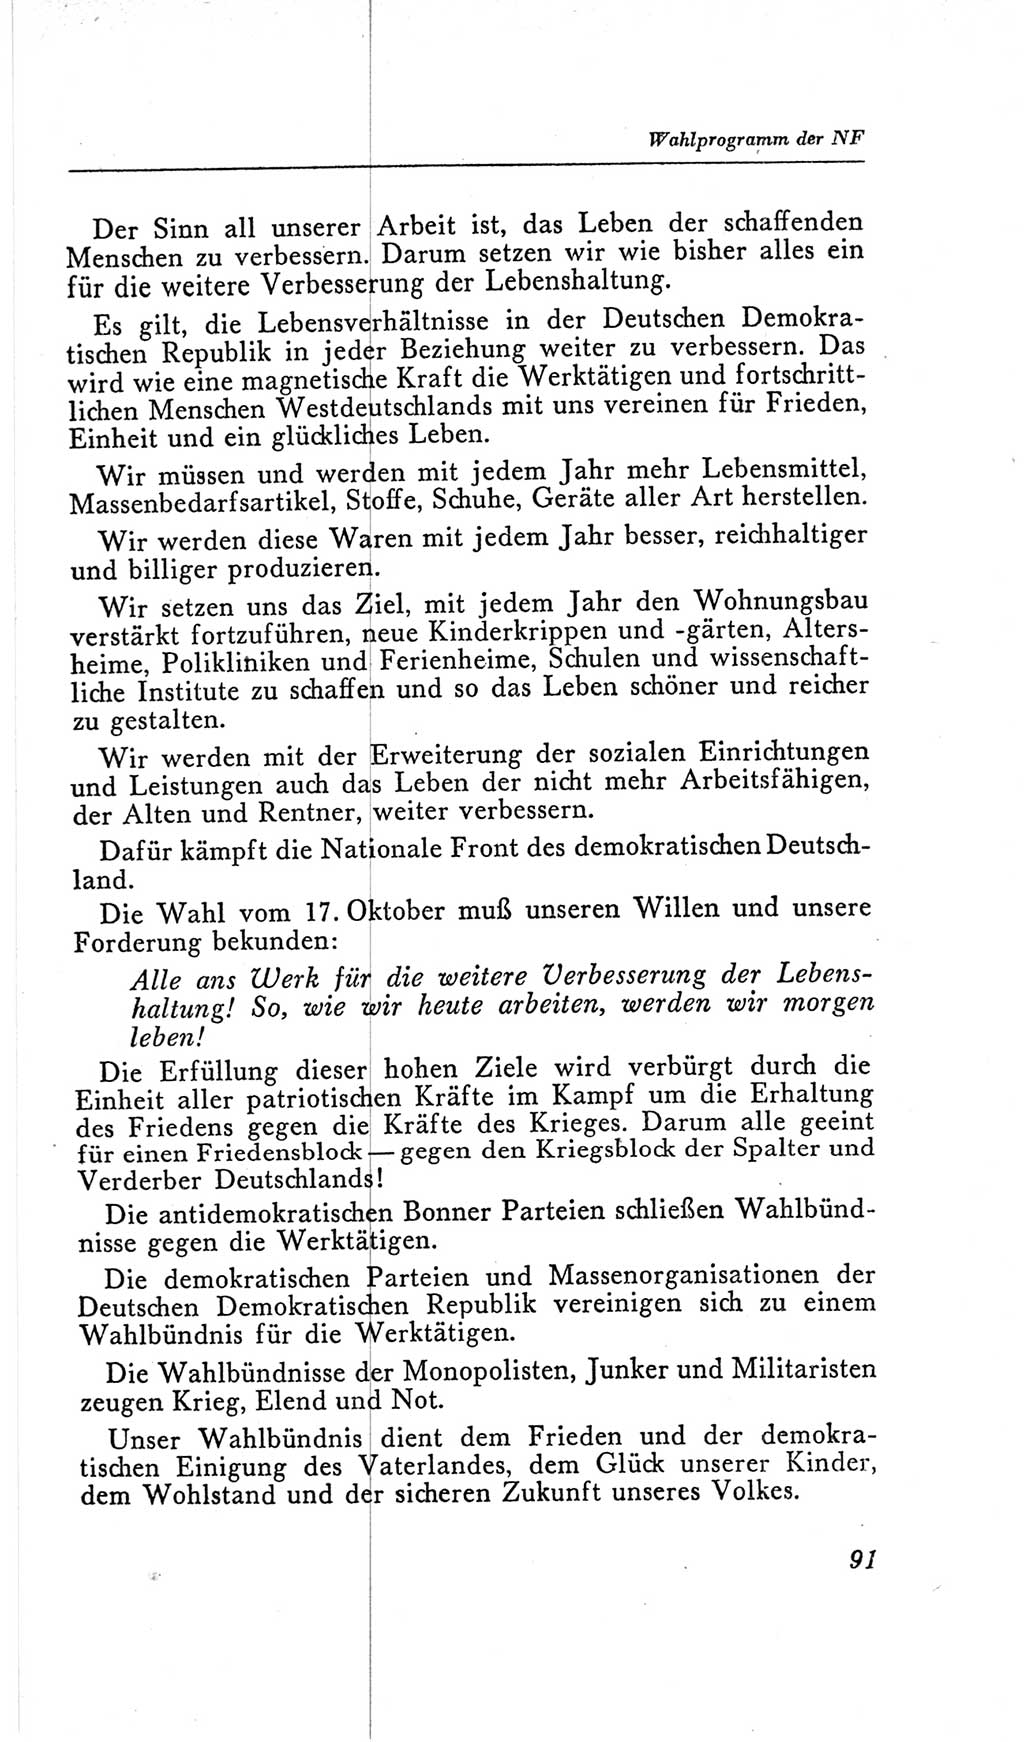 Handbuch der Volkskammer (VK) der Deutschen Demokratischen Republik (DDR), 2. Wahlperiode 1954-1958, Seite 91 (Hdb. VK. DDR, 2. WP. 1954-1958, S. 91)